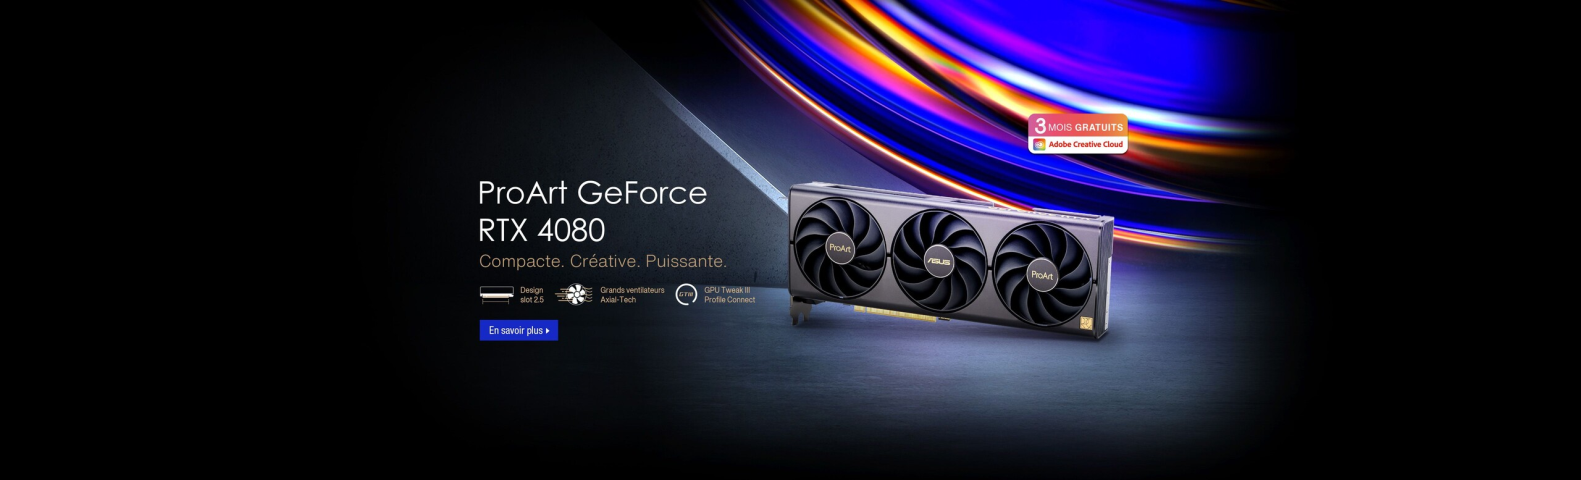 ProArt GeForce RTX 4080